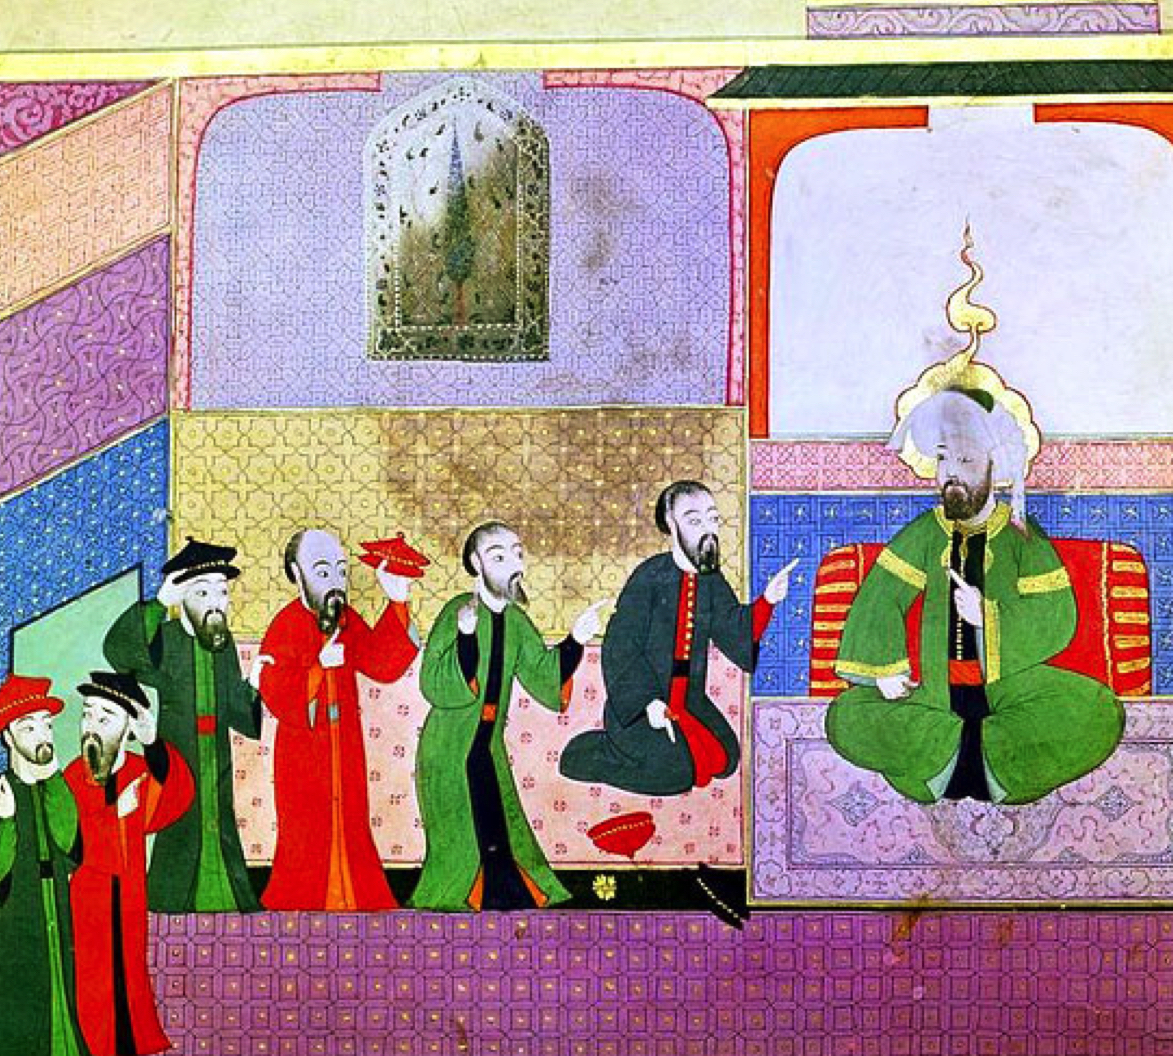 Ottoman Jews